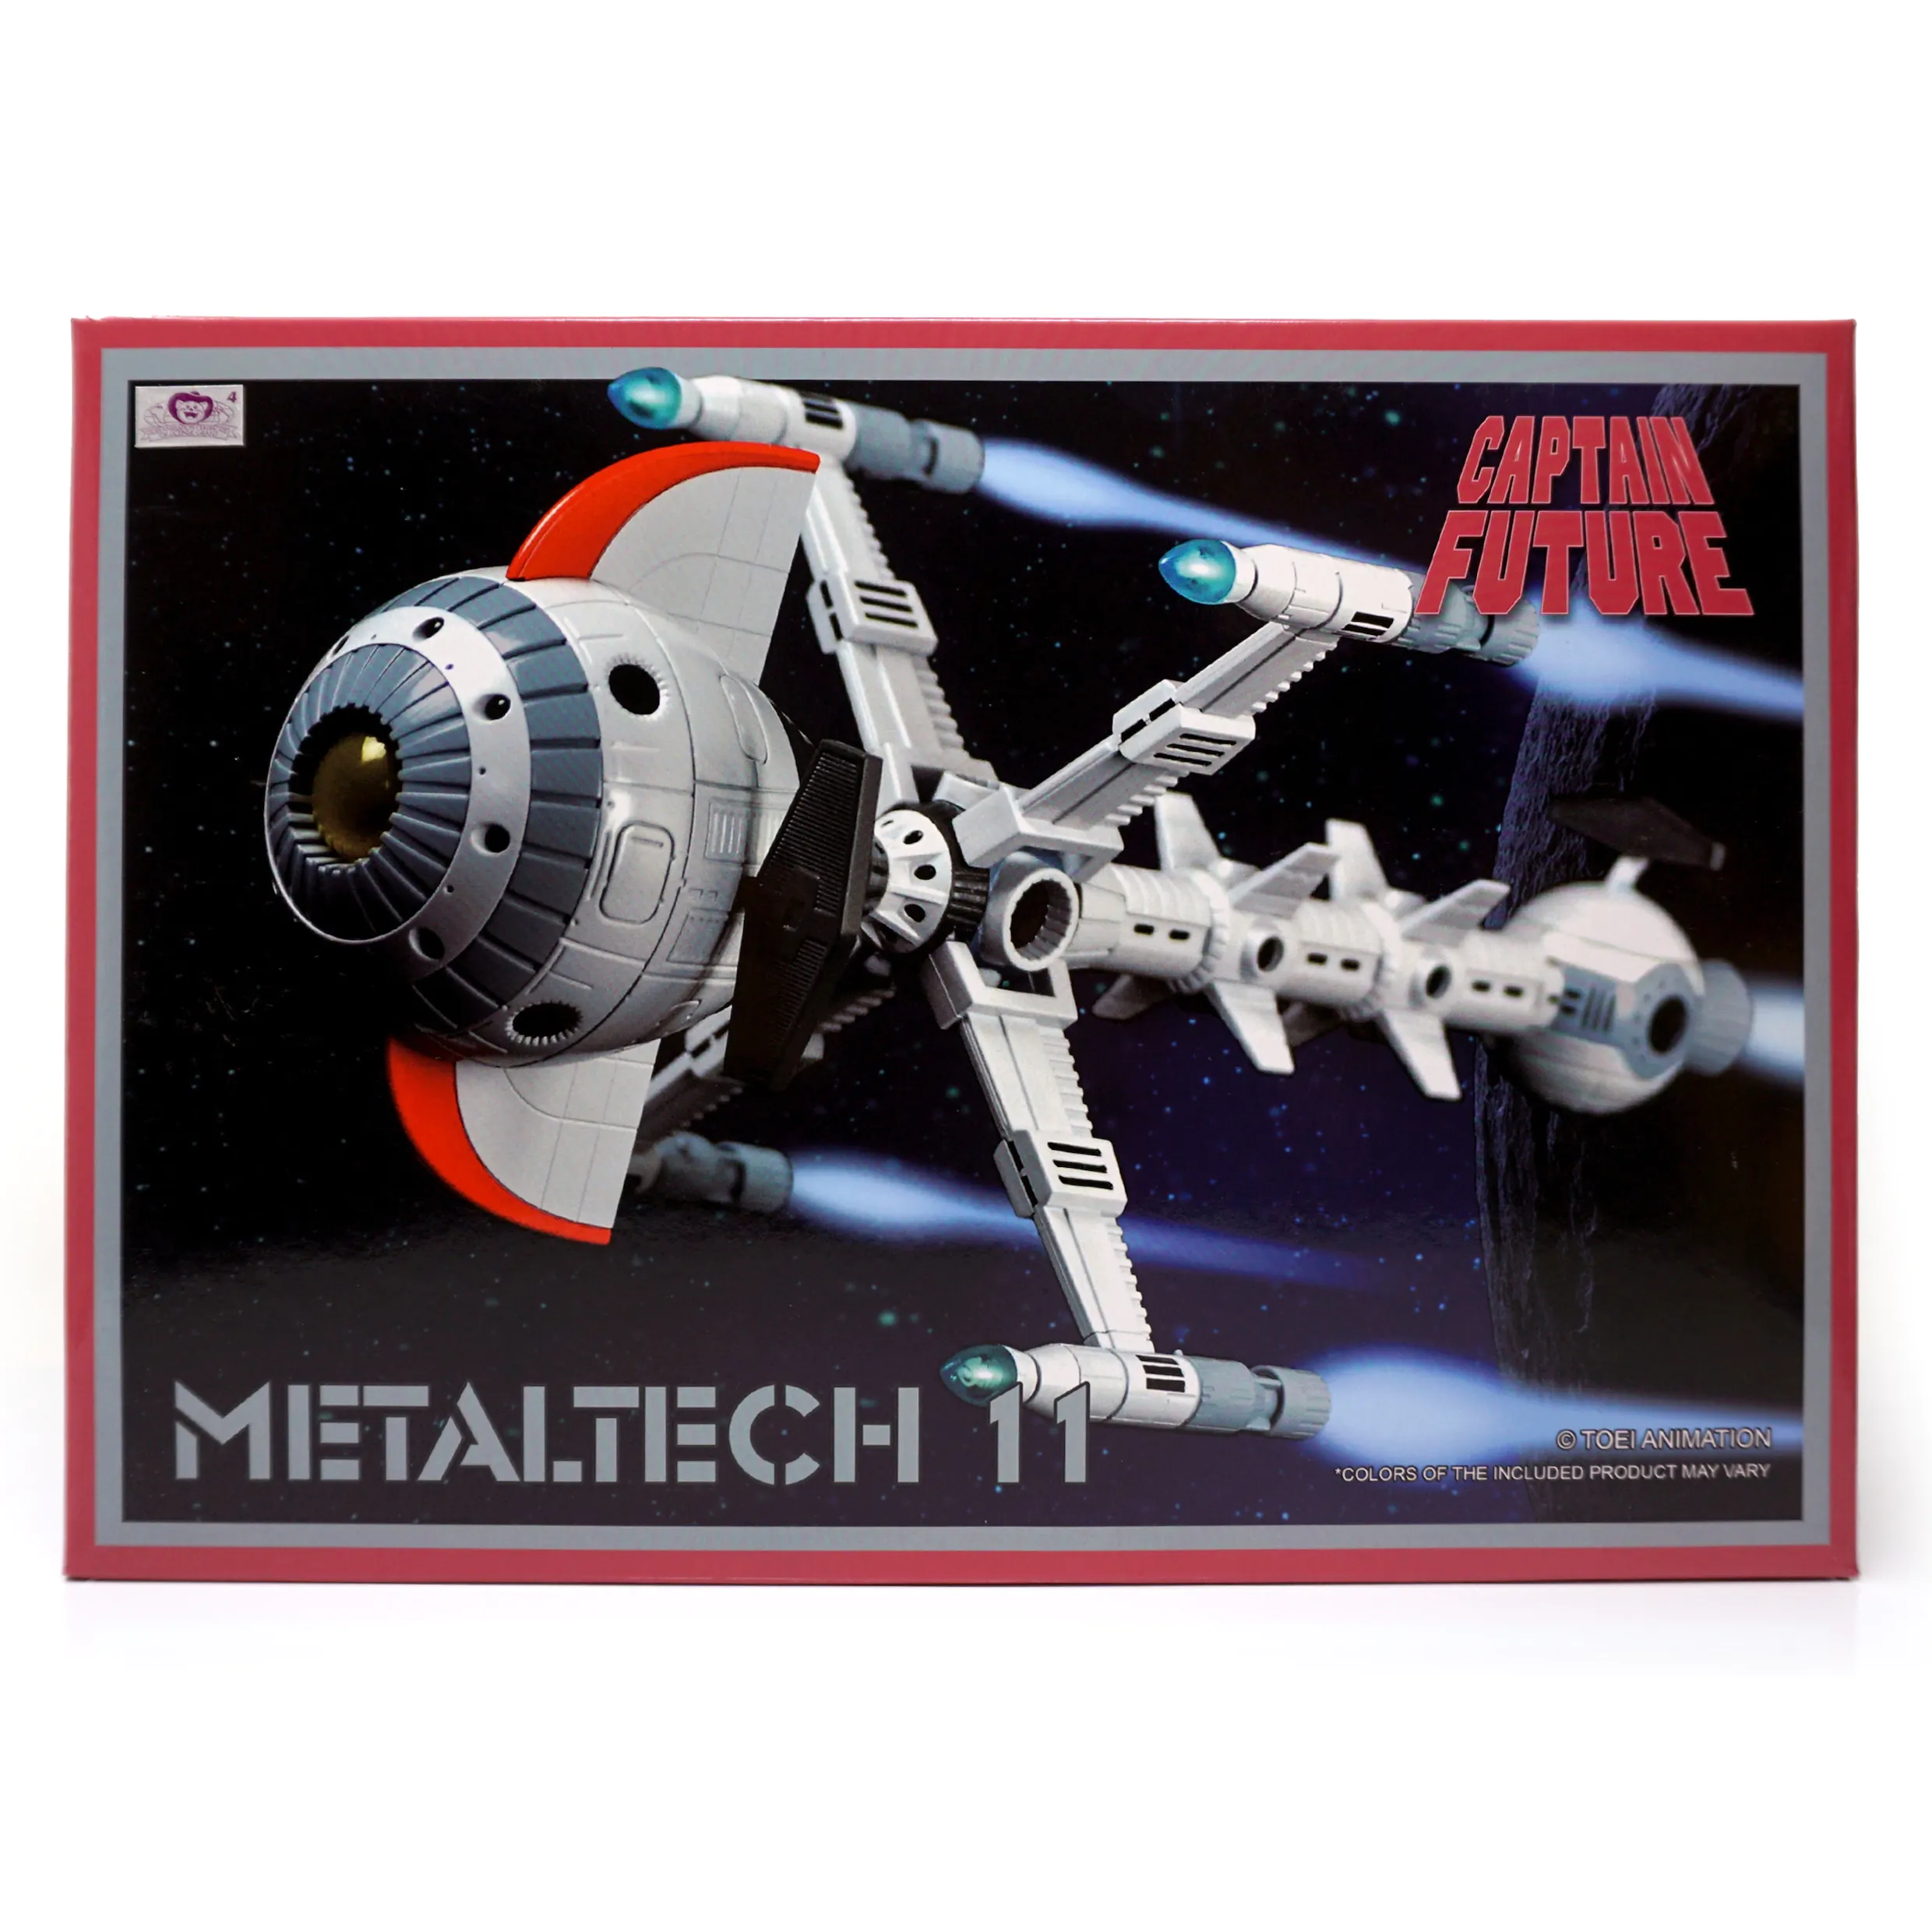 Metaltech – Captain Future Cyberlabe